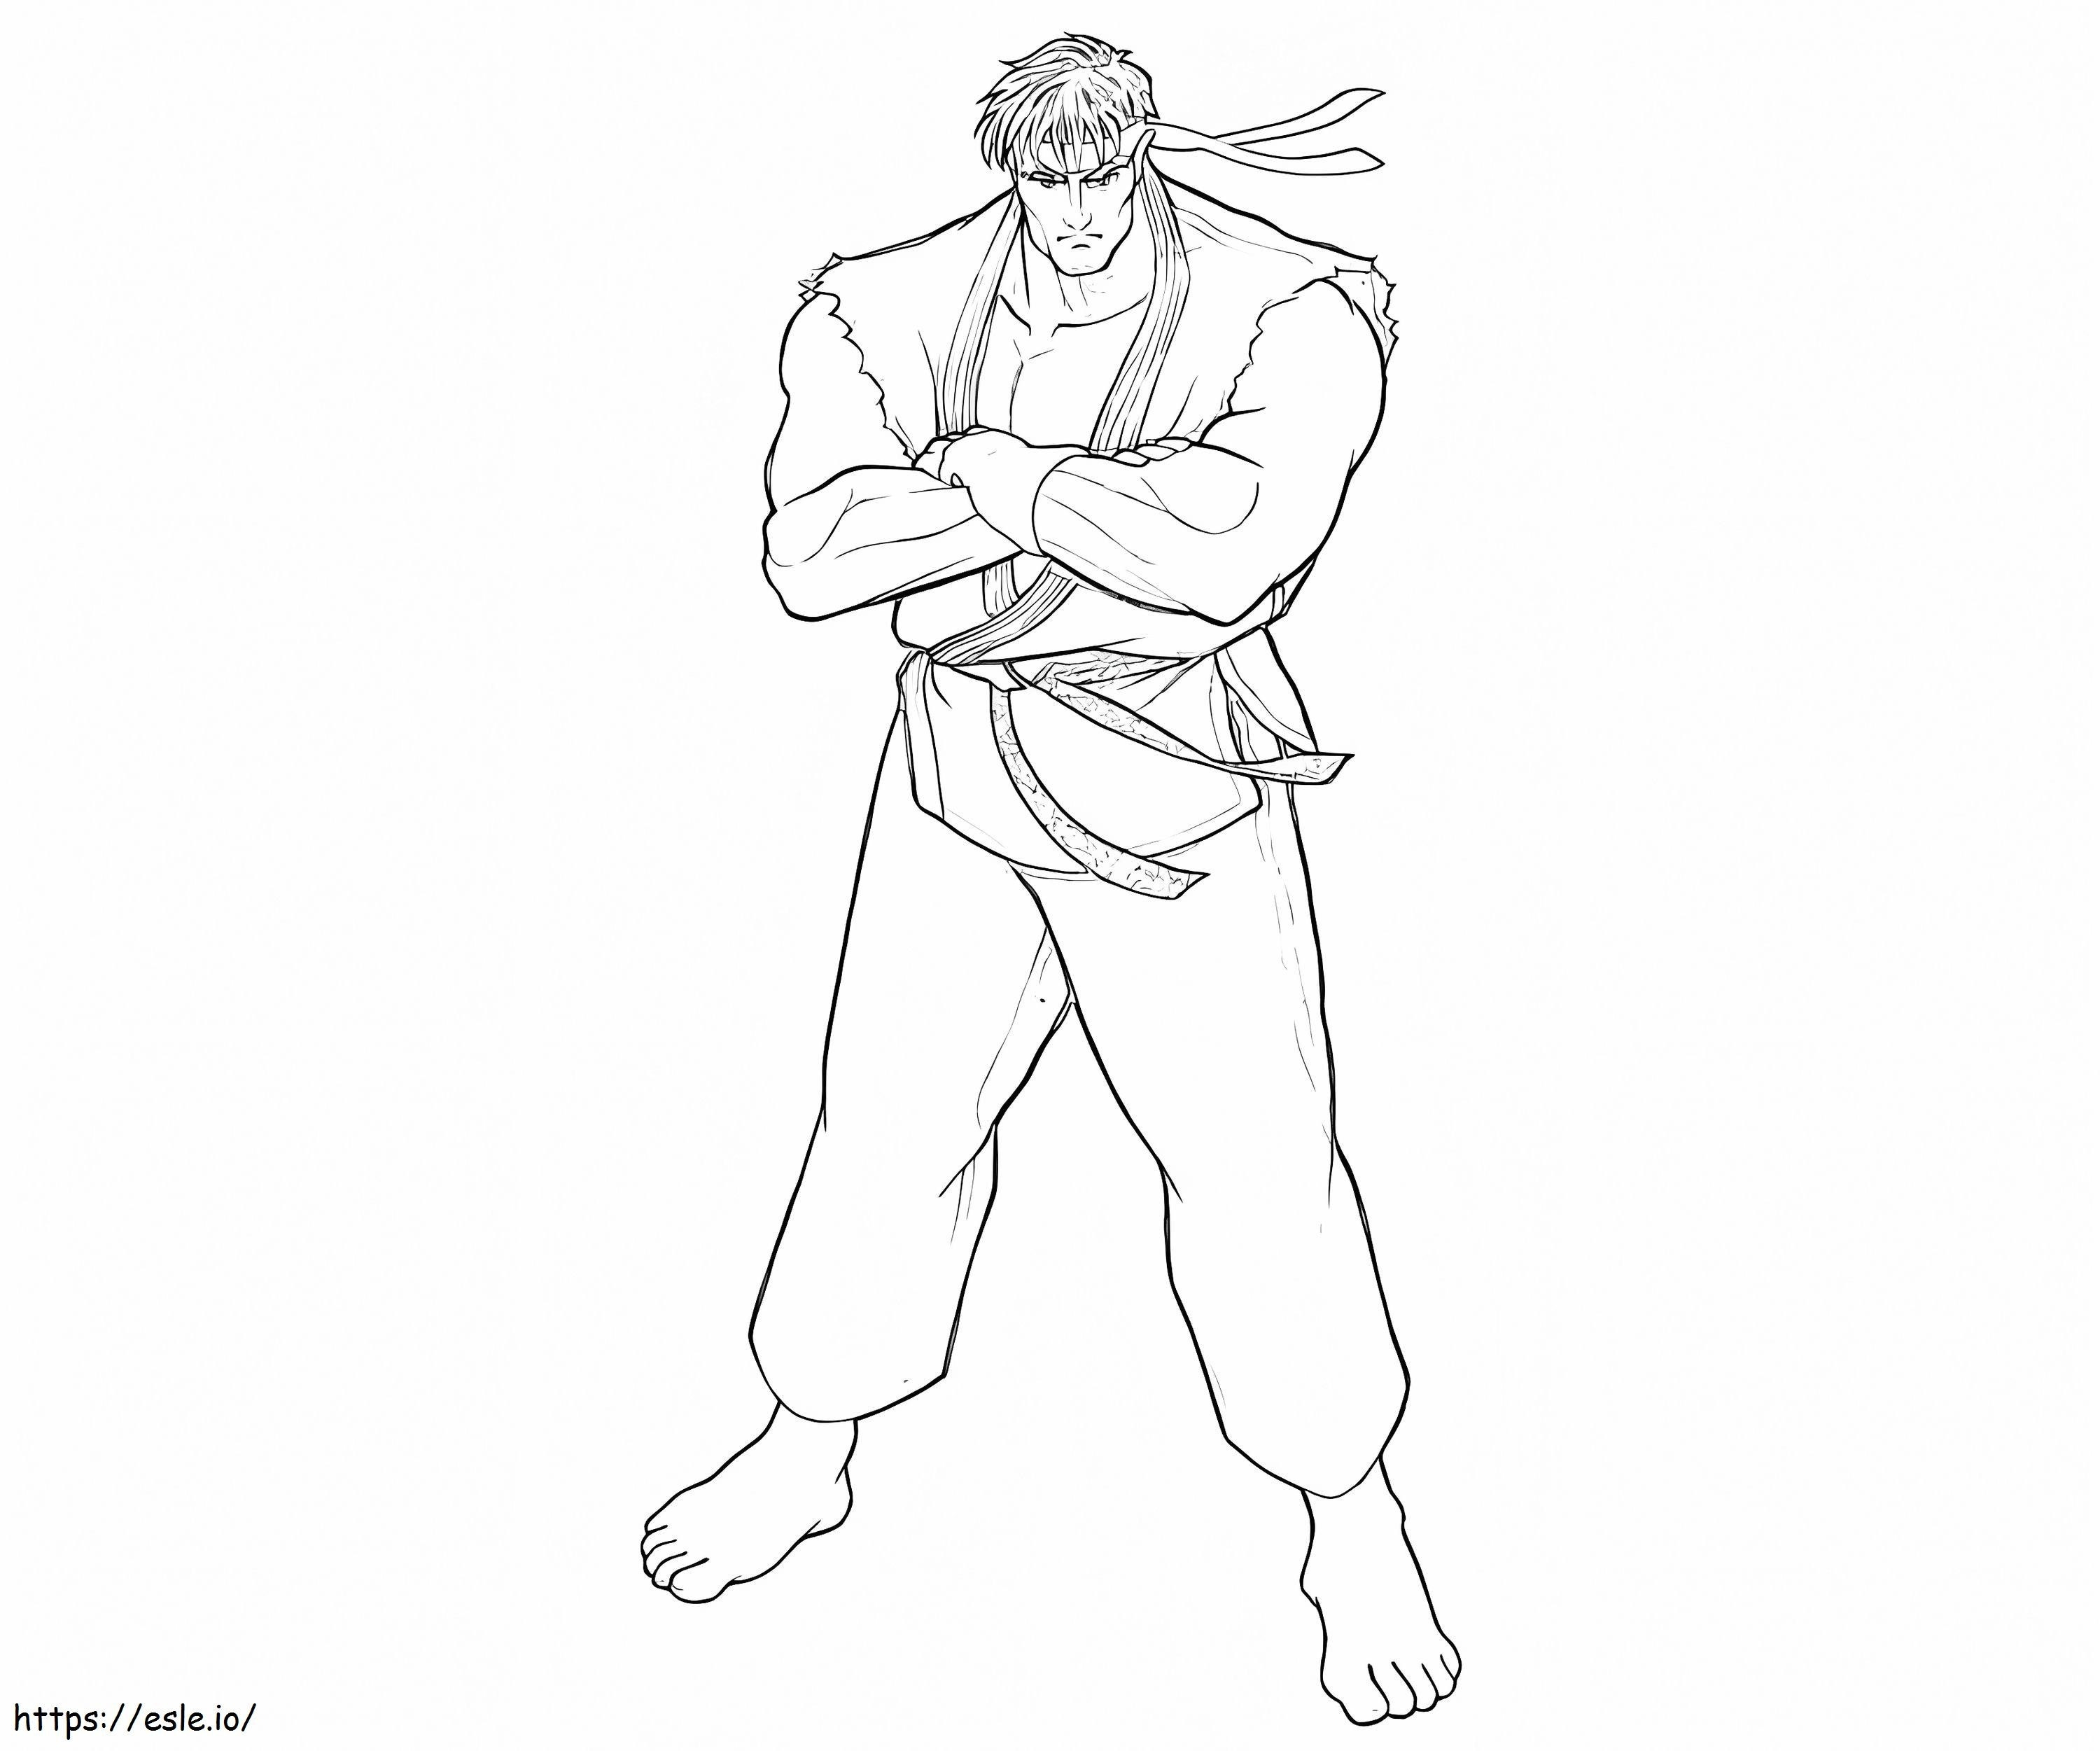 Eliberează-l pe Ryu de colorat